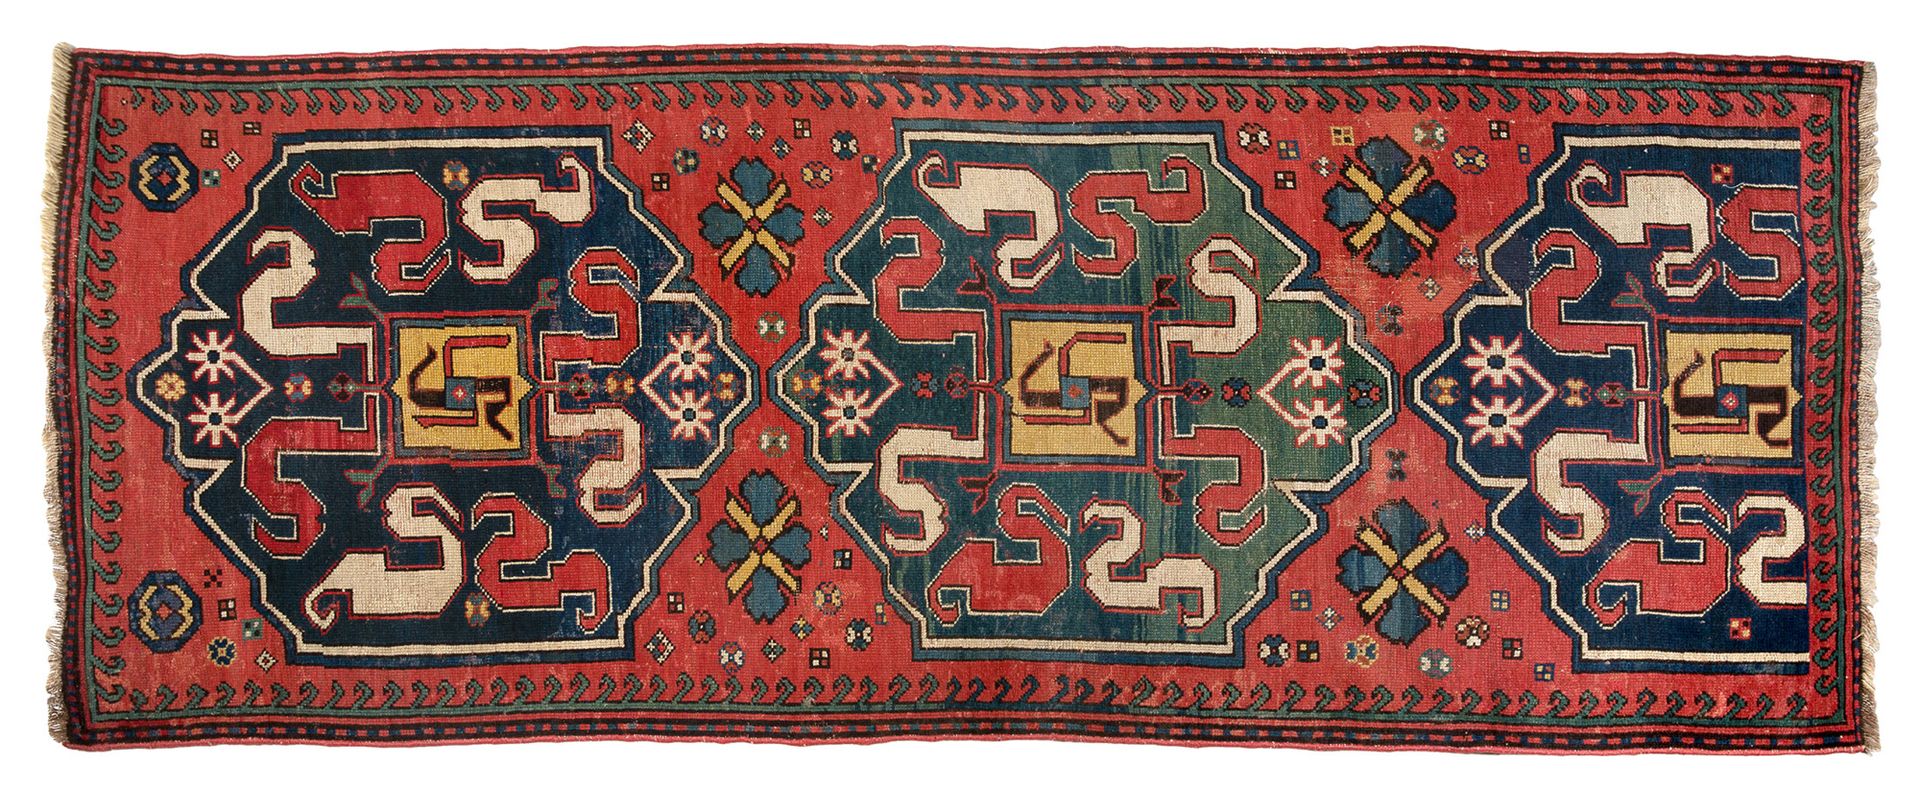 Null [RUGS]
Very old Chonzoresk (Armenia) mid 19th century. Wool velvet on wool &hellip;